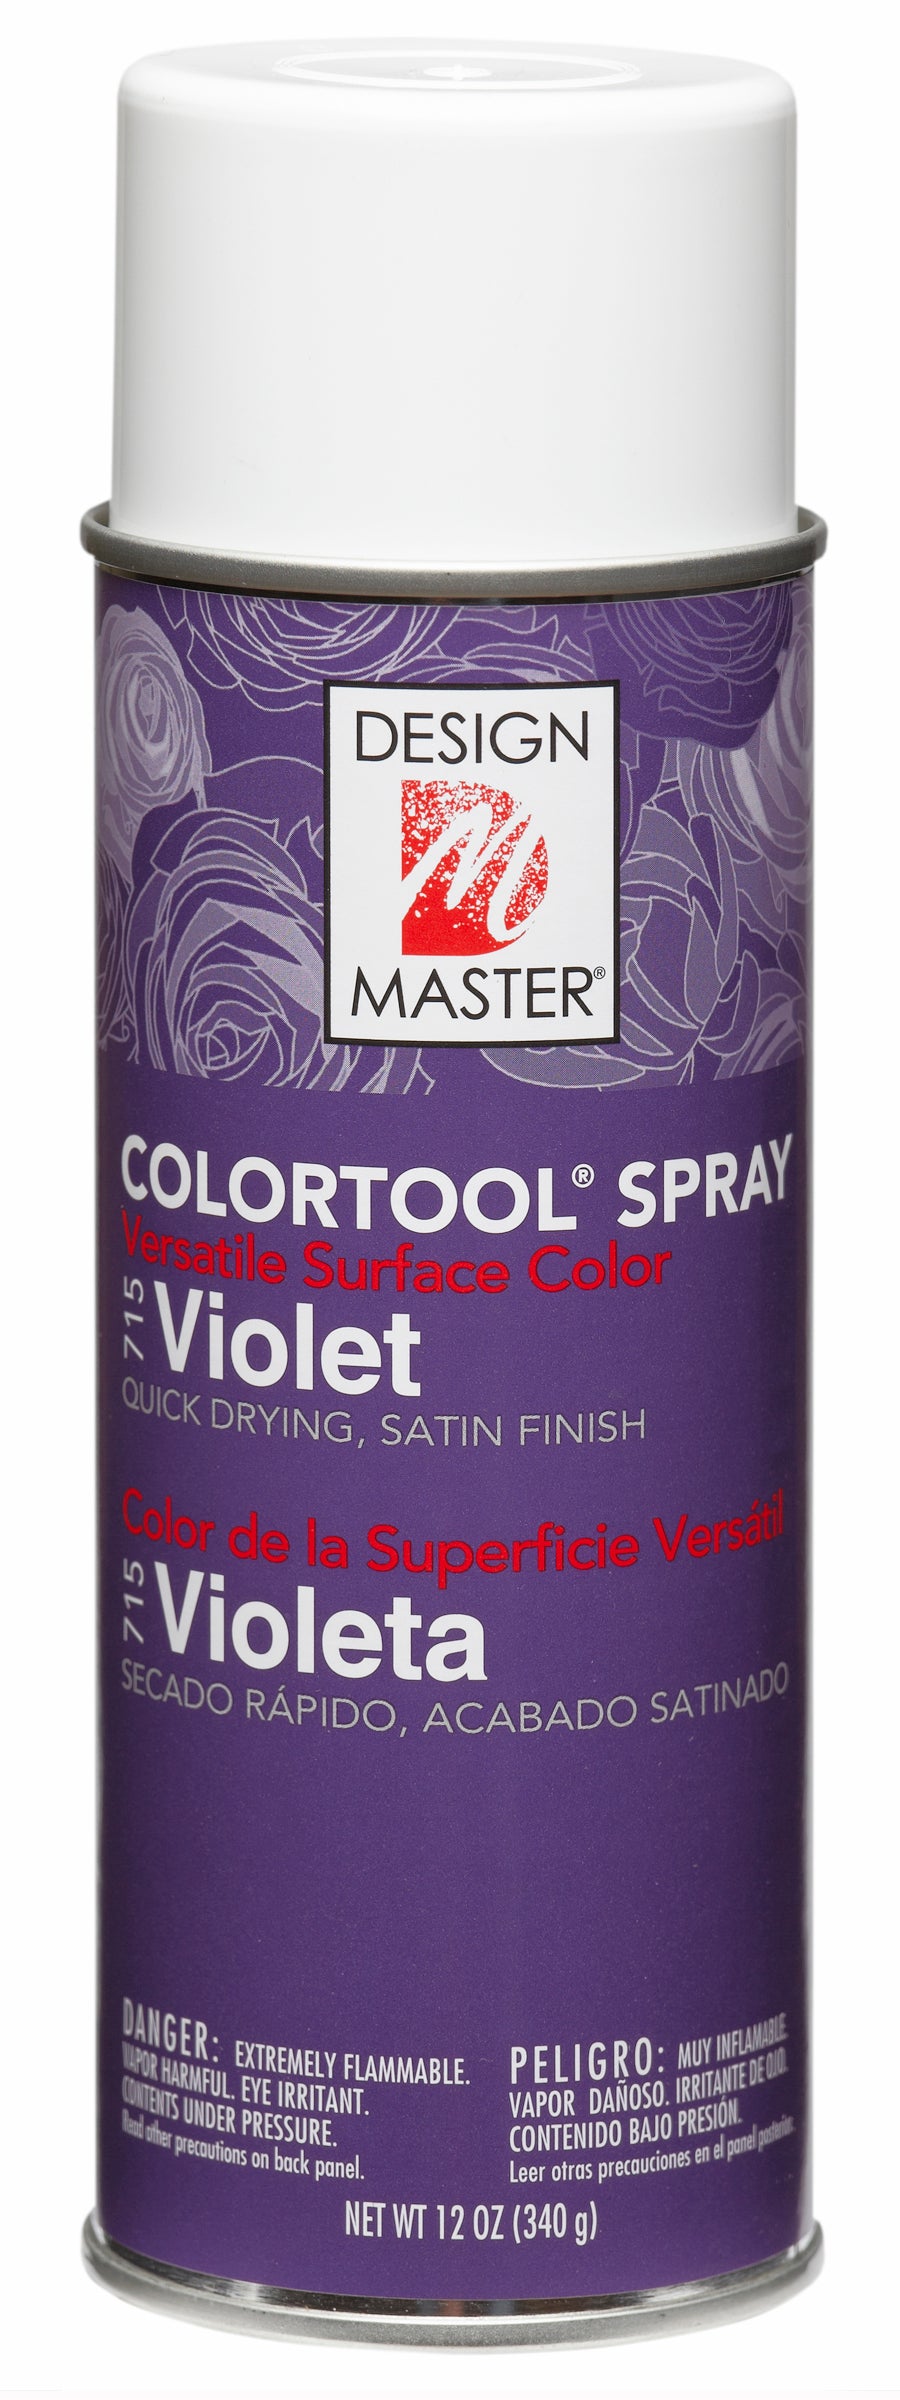 Design Master Colortool Spray-Violet